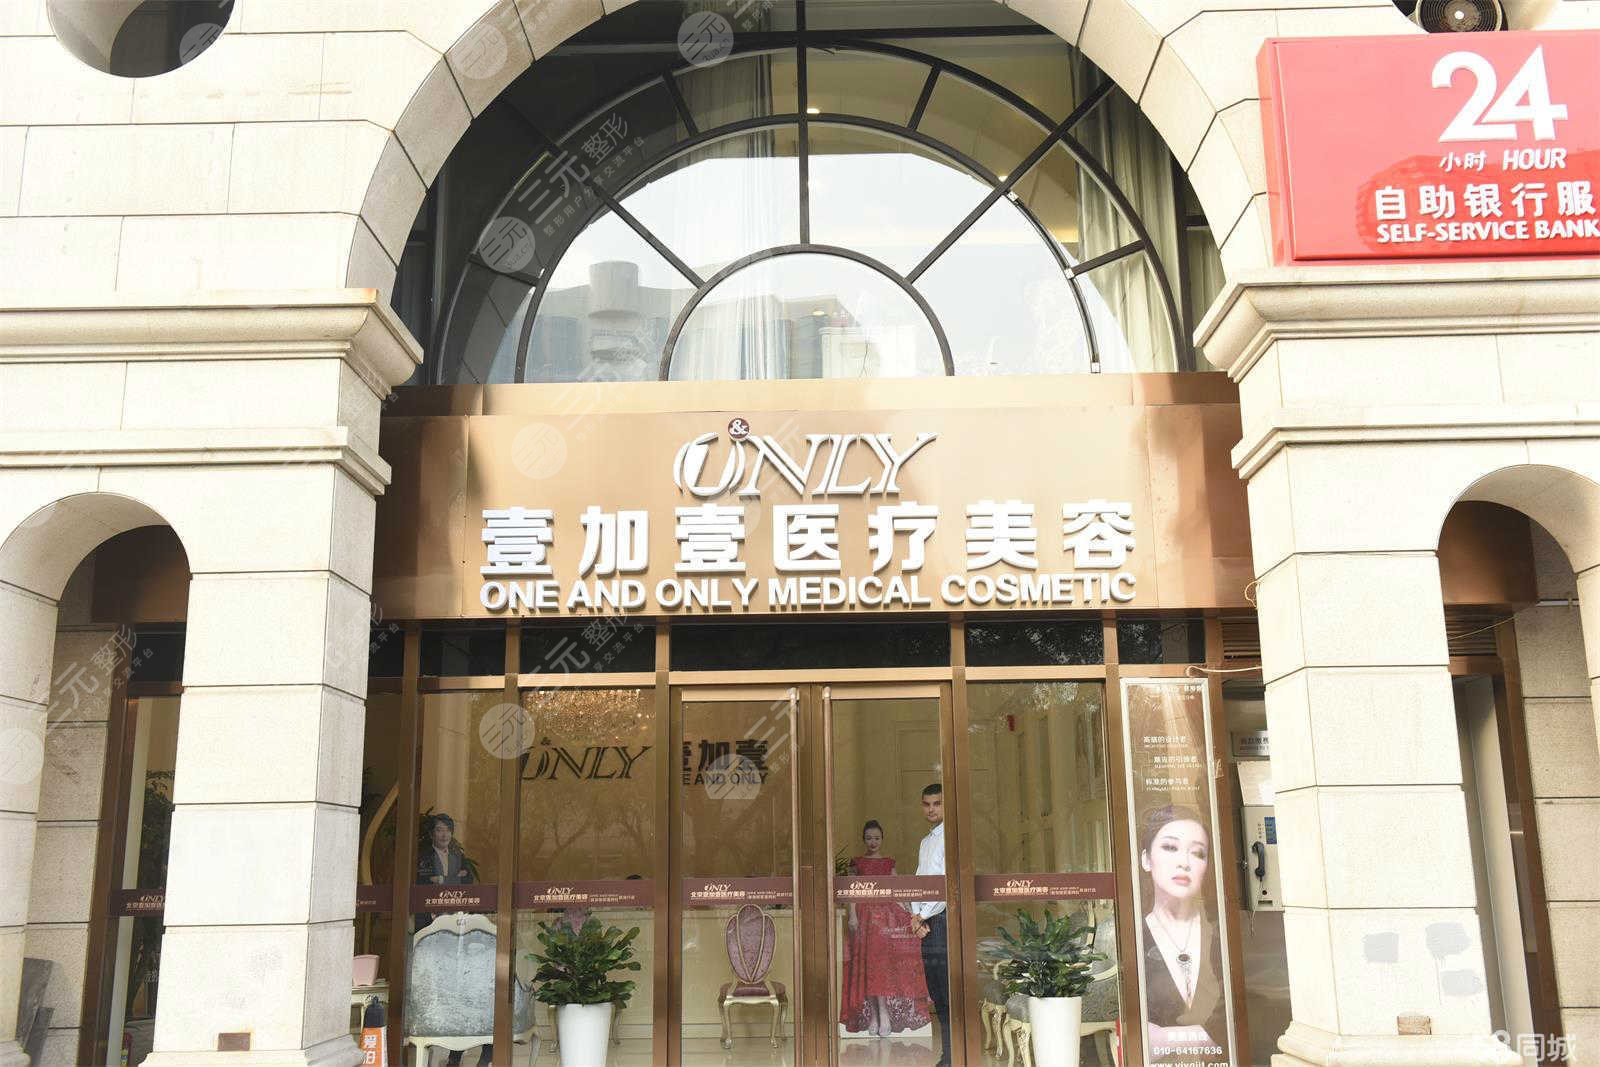 北京十大美容院排名榜(排名):美莱、艺星、画美等力争前五